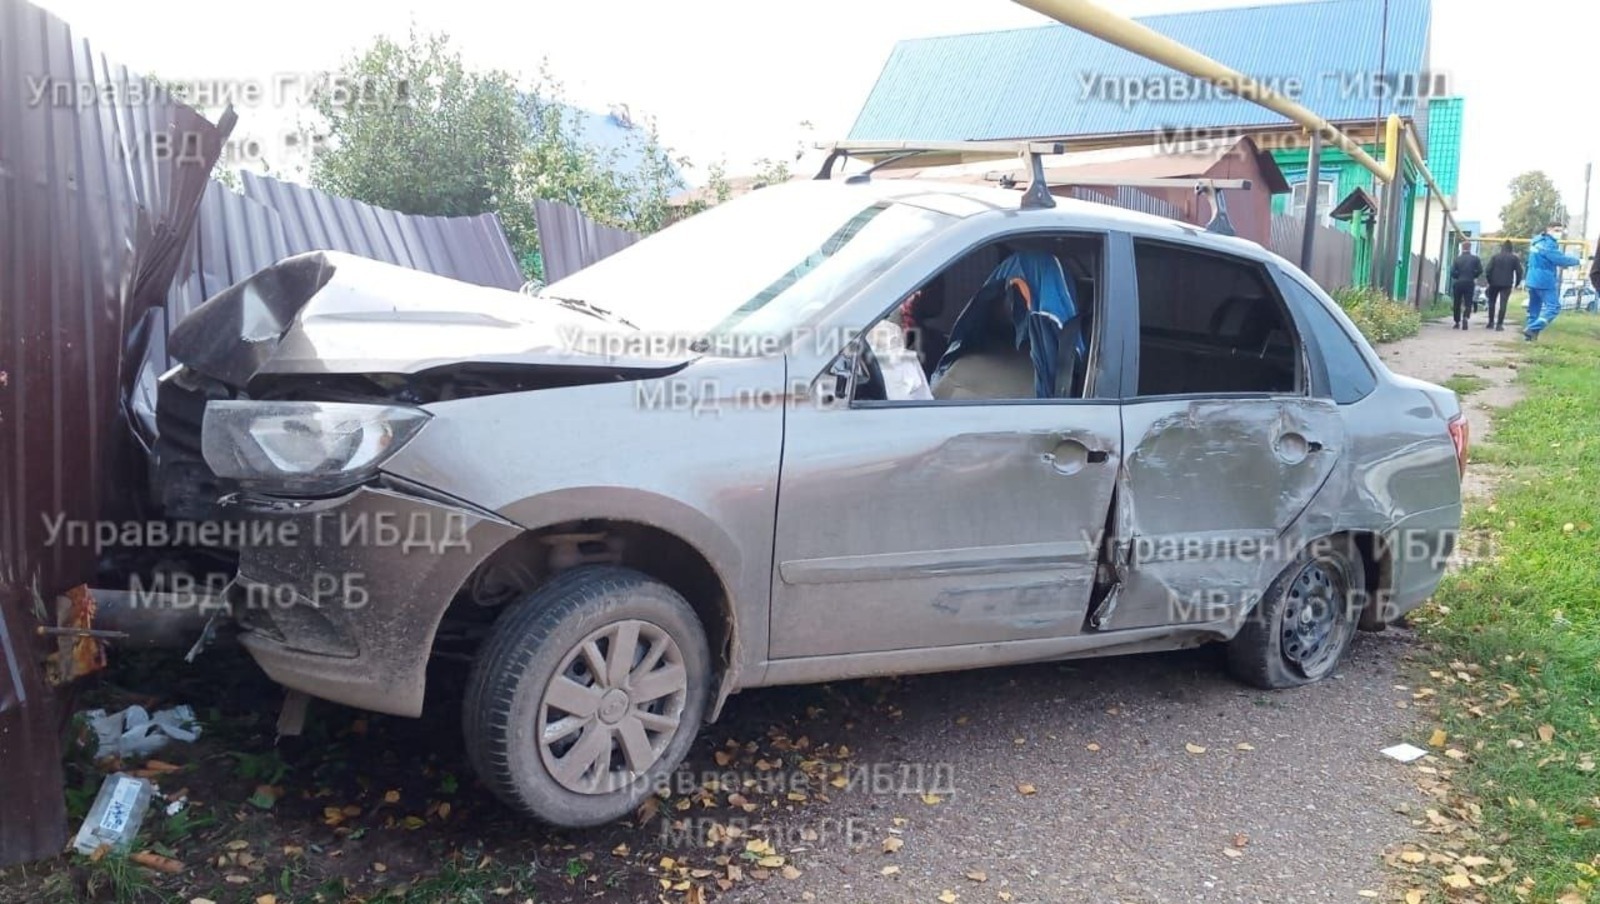 Нетрезвый водитель в Башкирии загубил человеческую жизнь